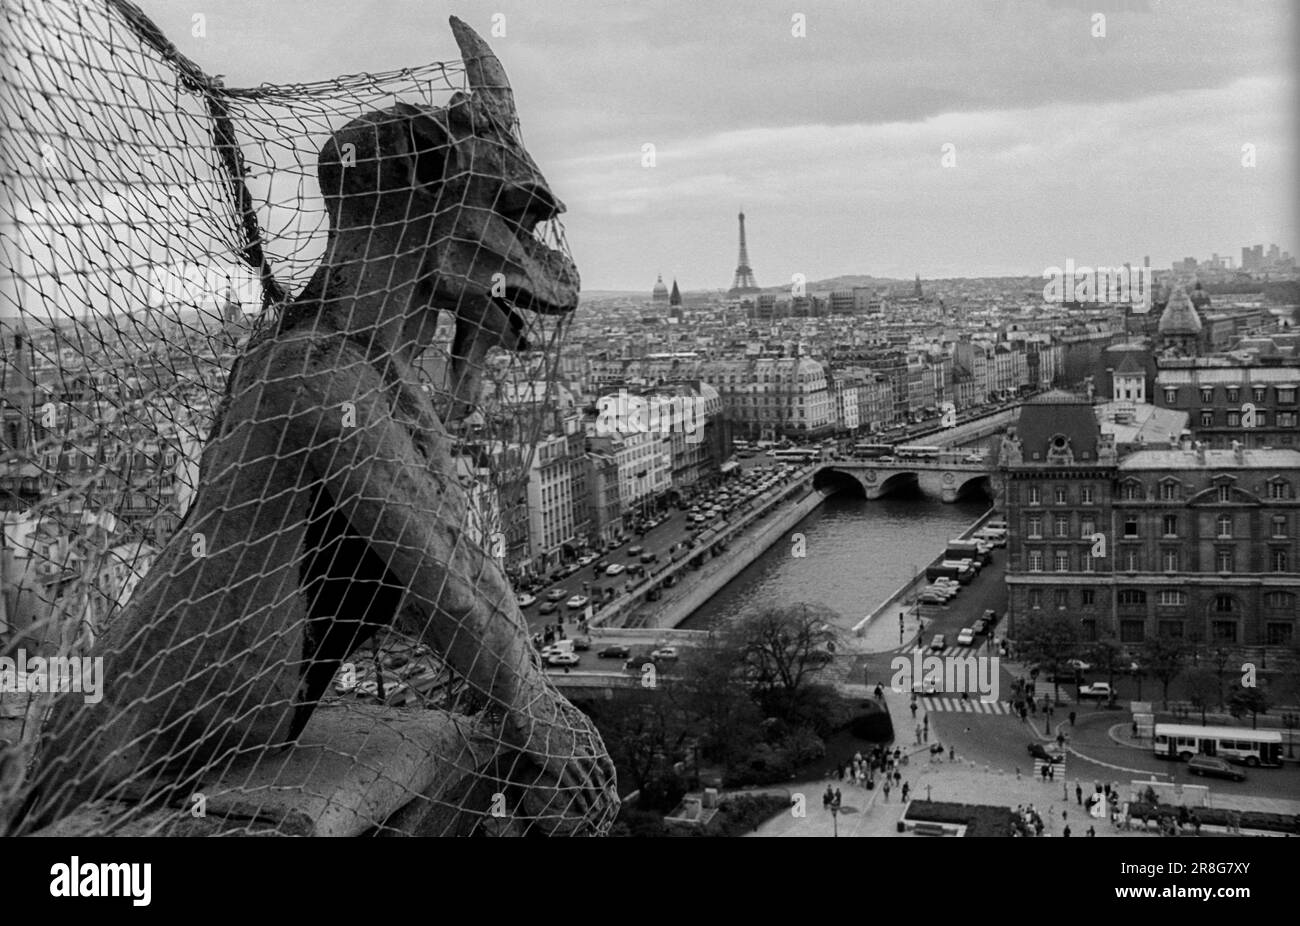 Francia, París, 24.03.1990, criaturas míticas en las torres de Notre-Dame Foto de stock